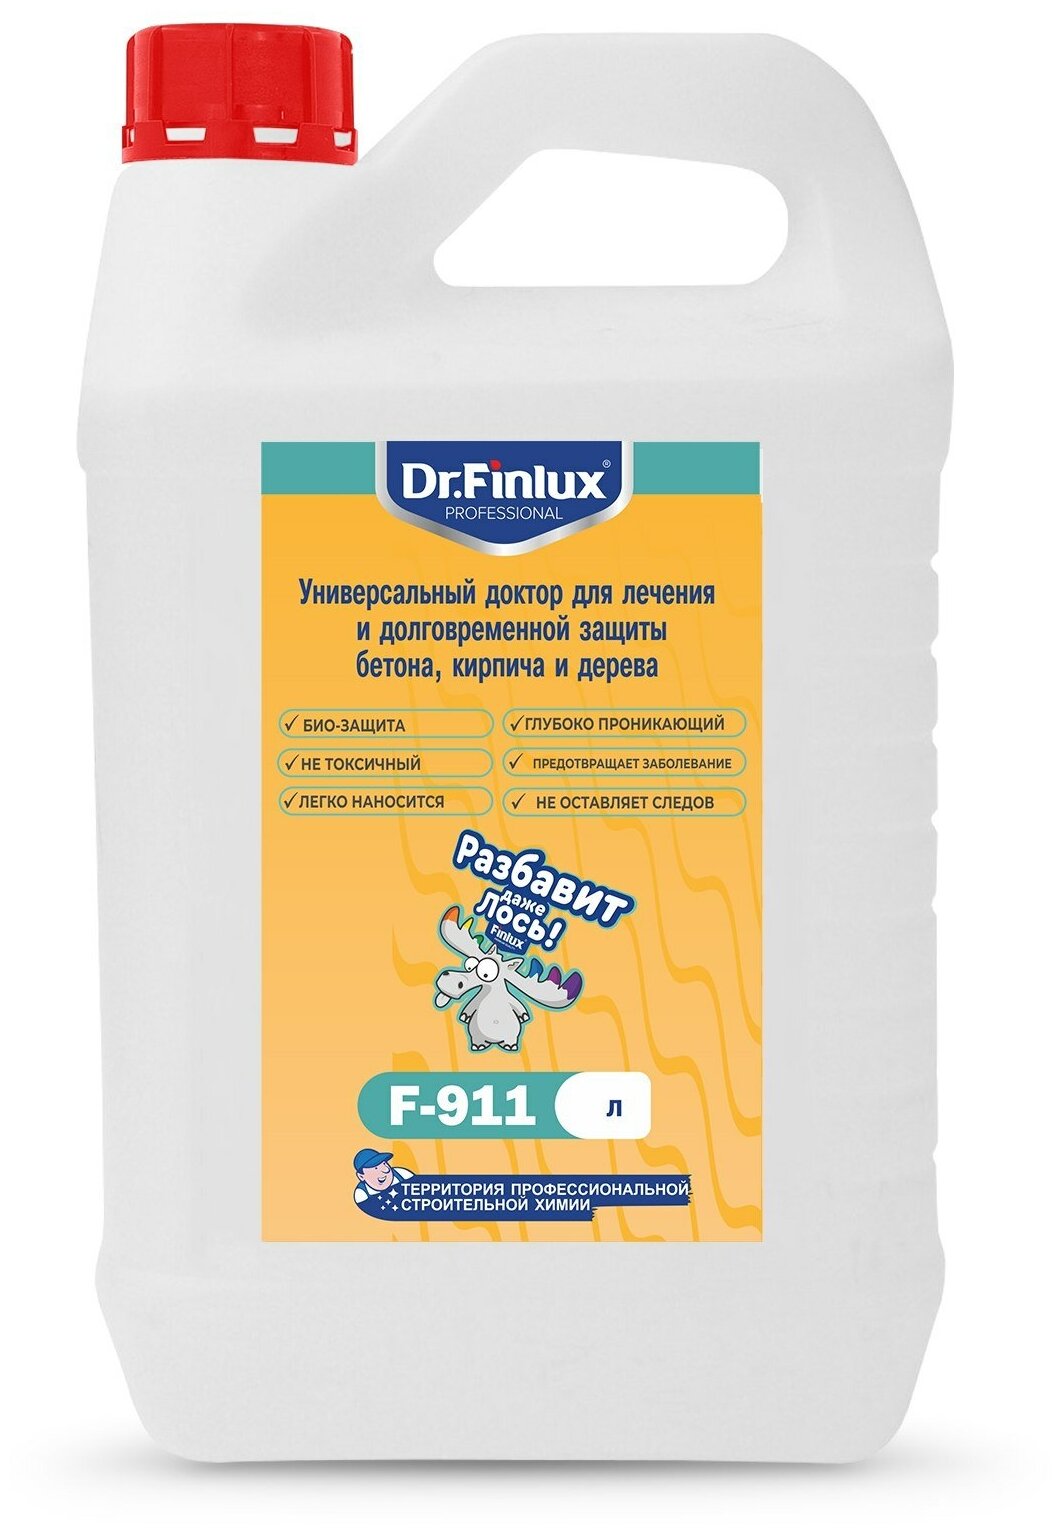 Dr.Finlux F-911. Универсальный доктор для лечения и долговременной защиты бетона, кирпича и дерева. 5кг.